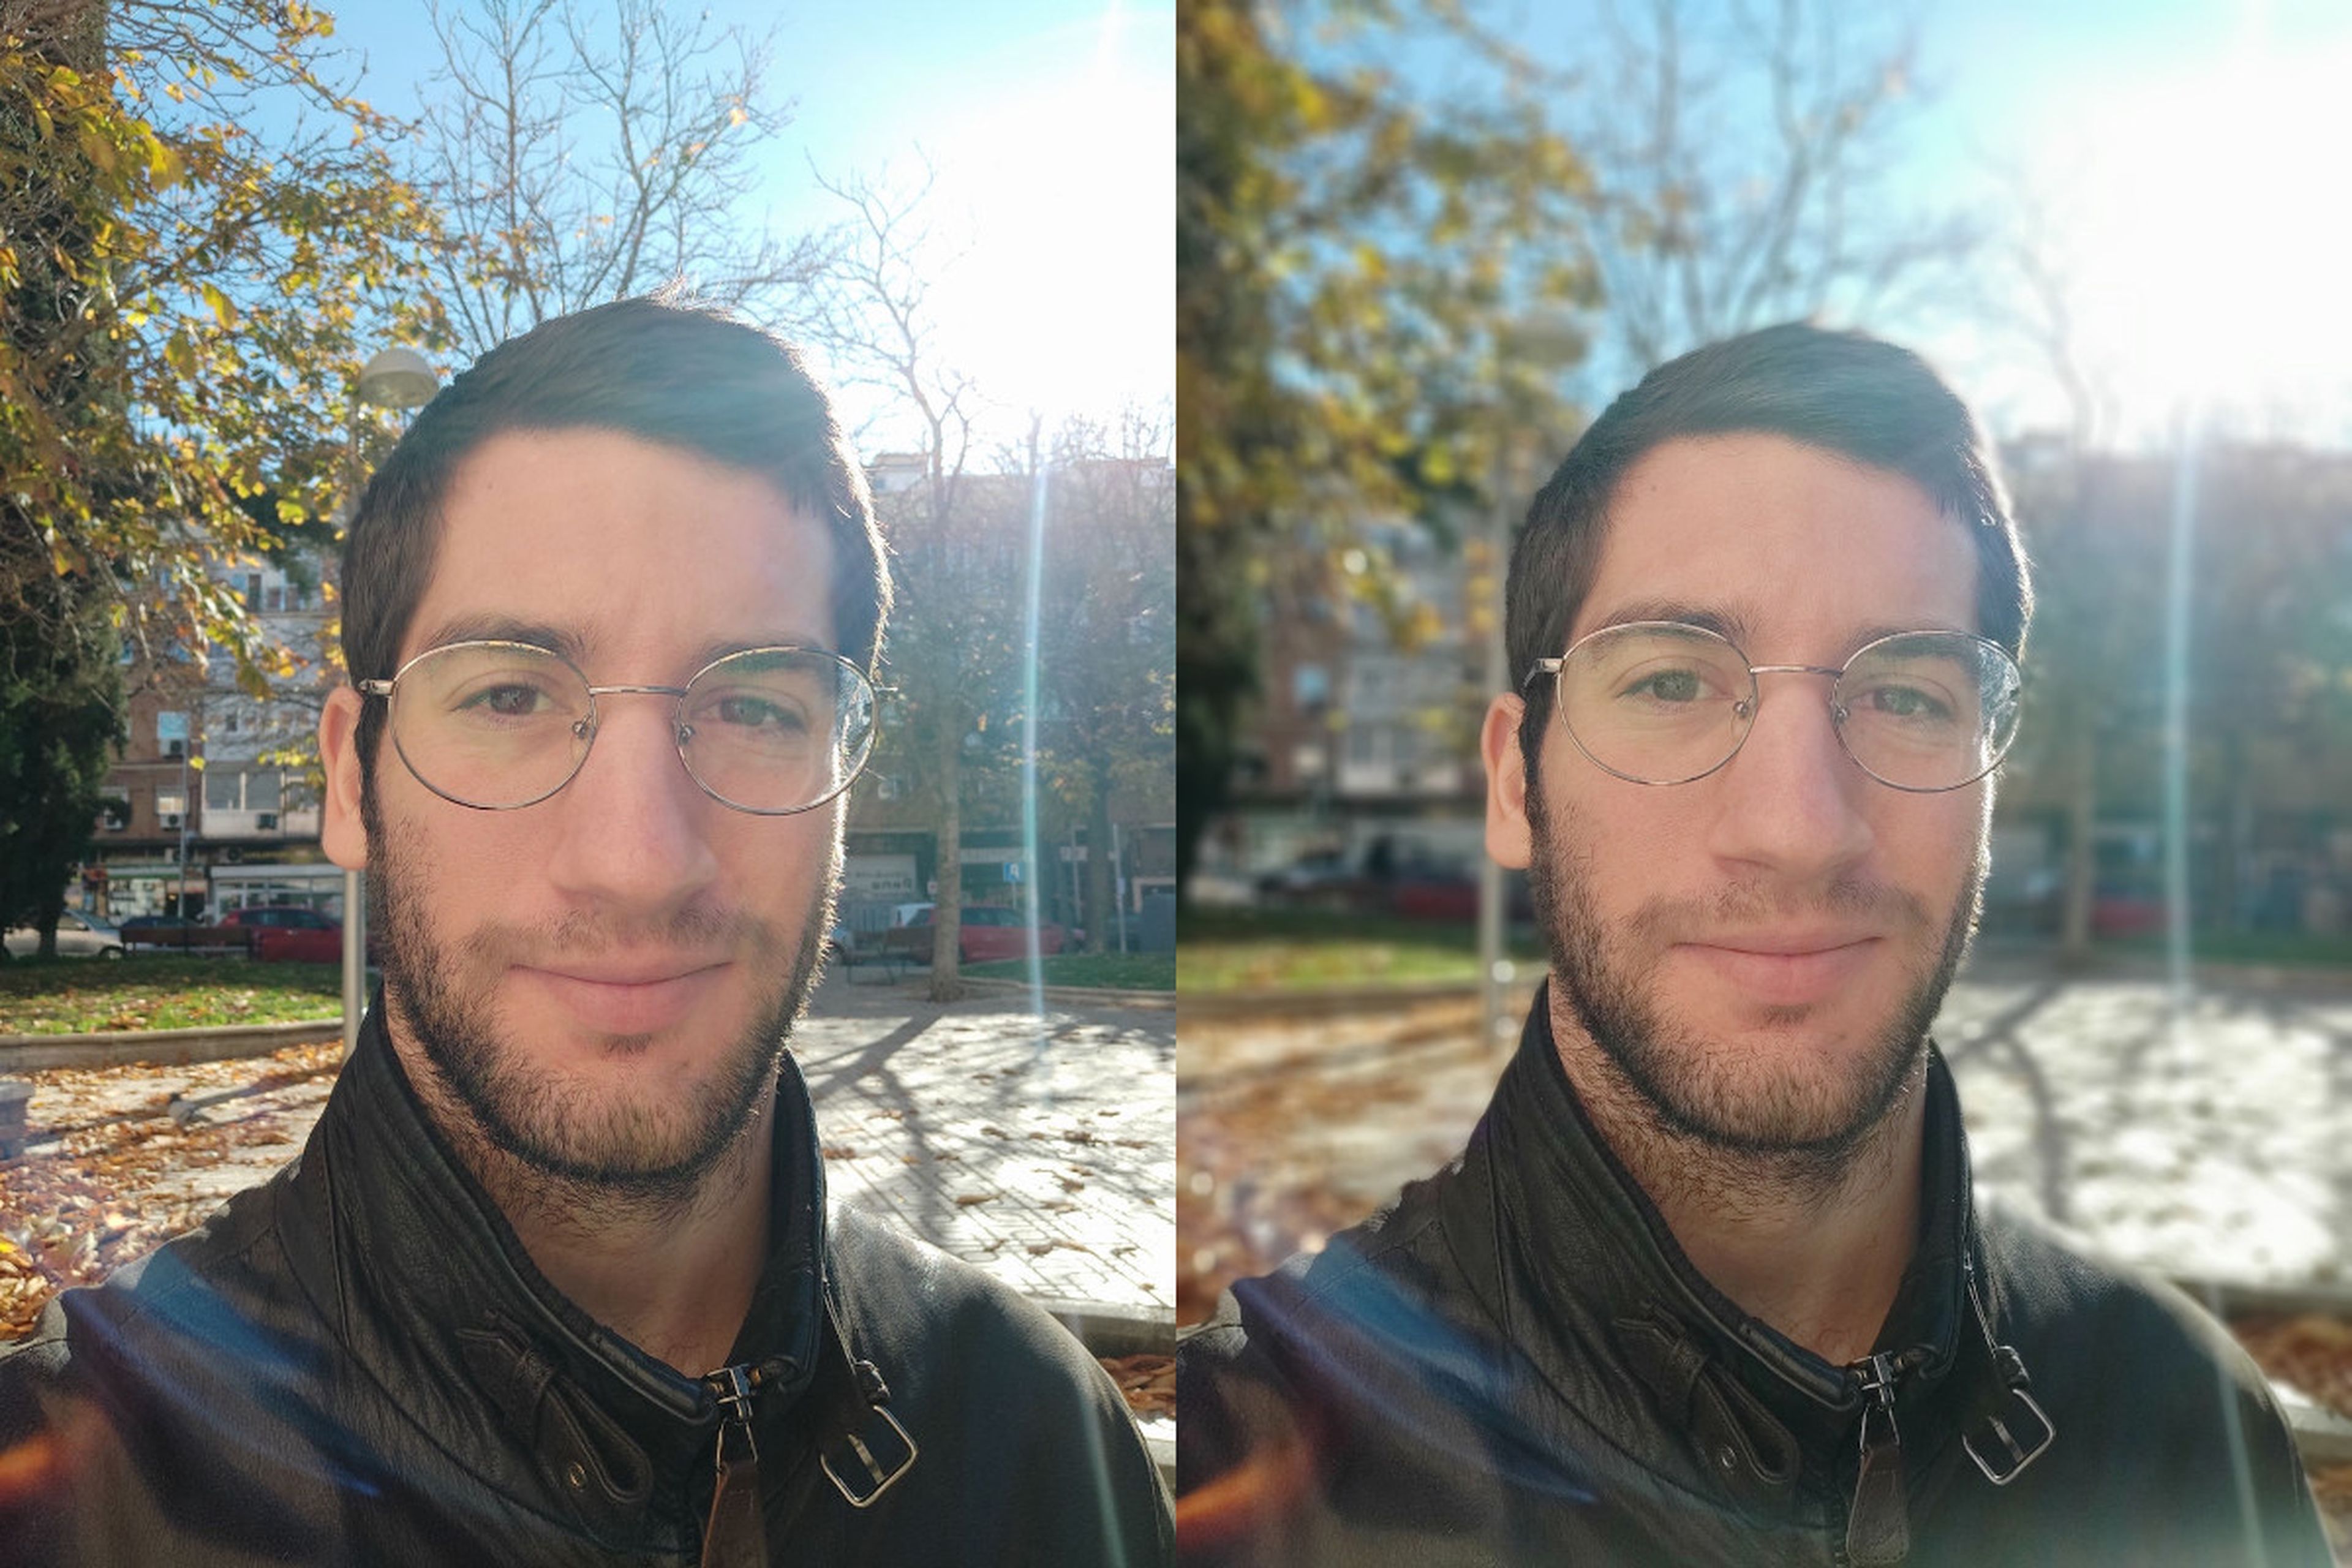 Izquierda: selfie sin Modo Retrato | Derecha: mismo selfie con Modo Retrato